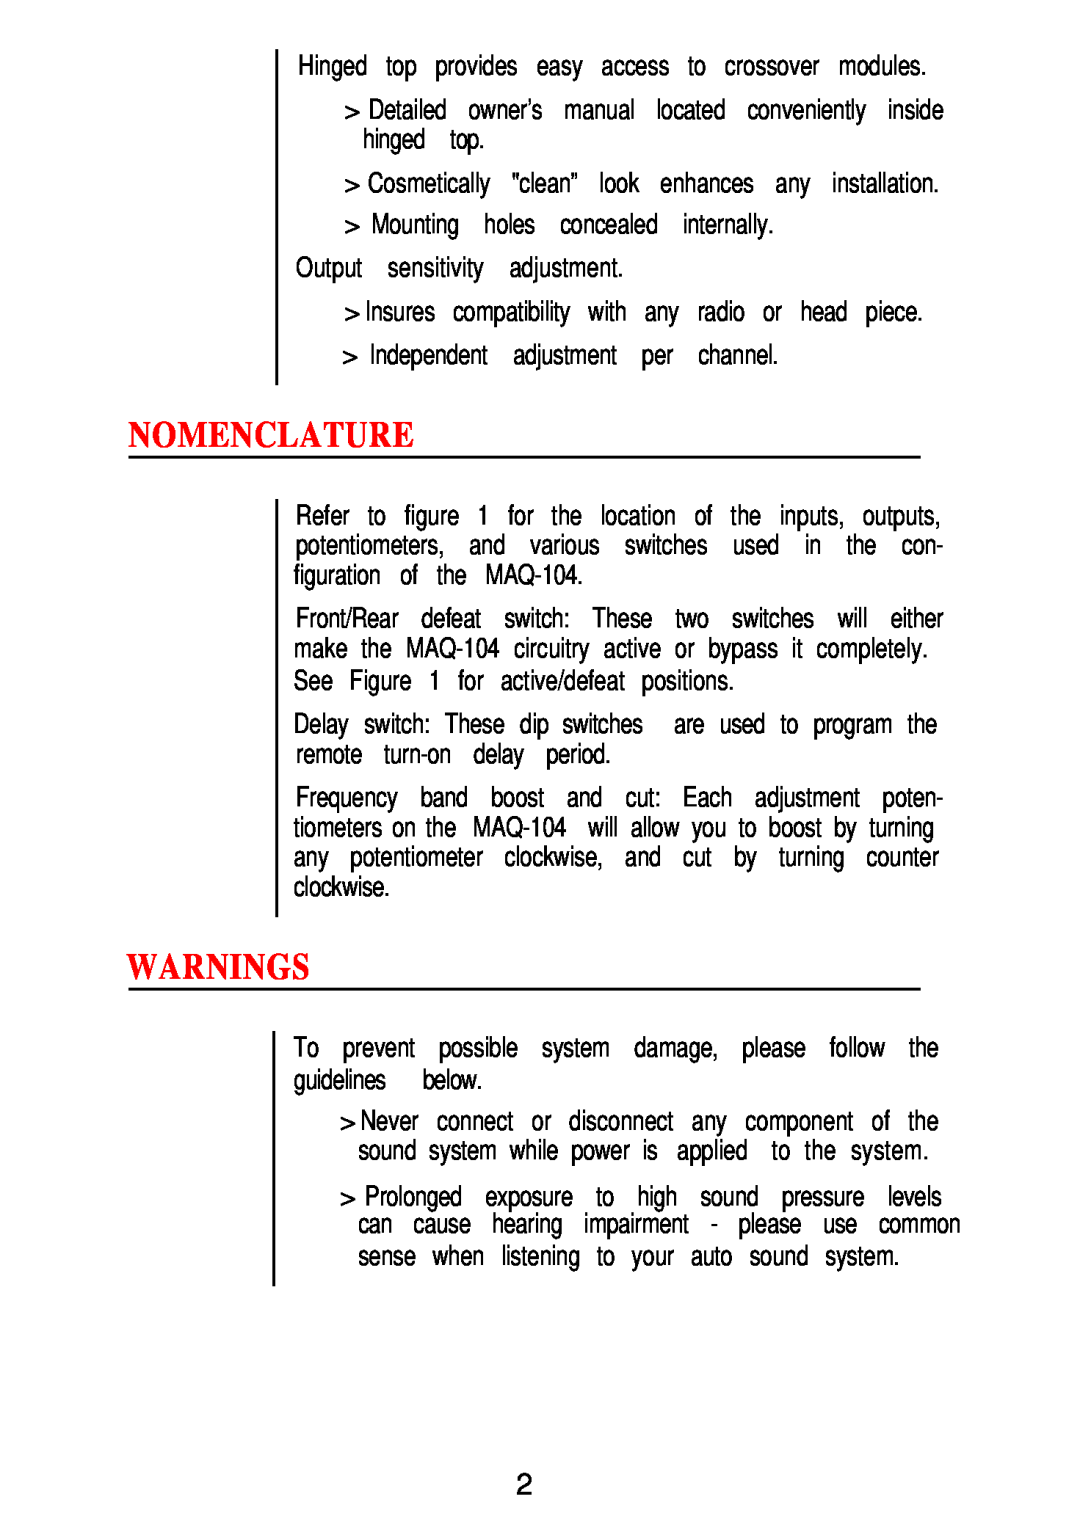 Hafler MAQ-104 owner manual Nomenclature, Warnings 